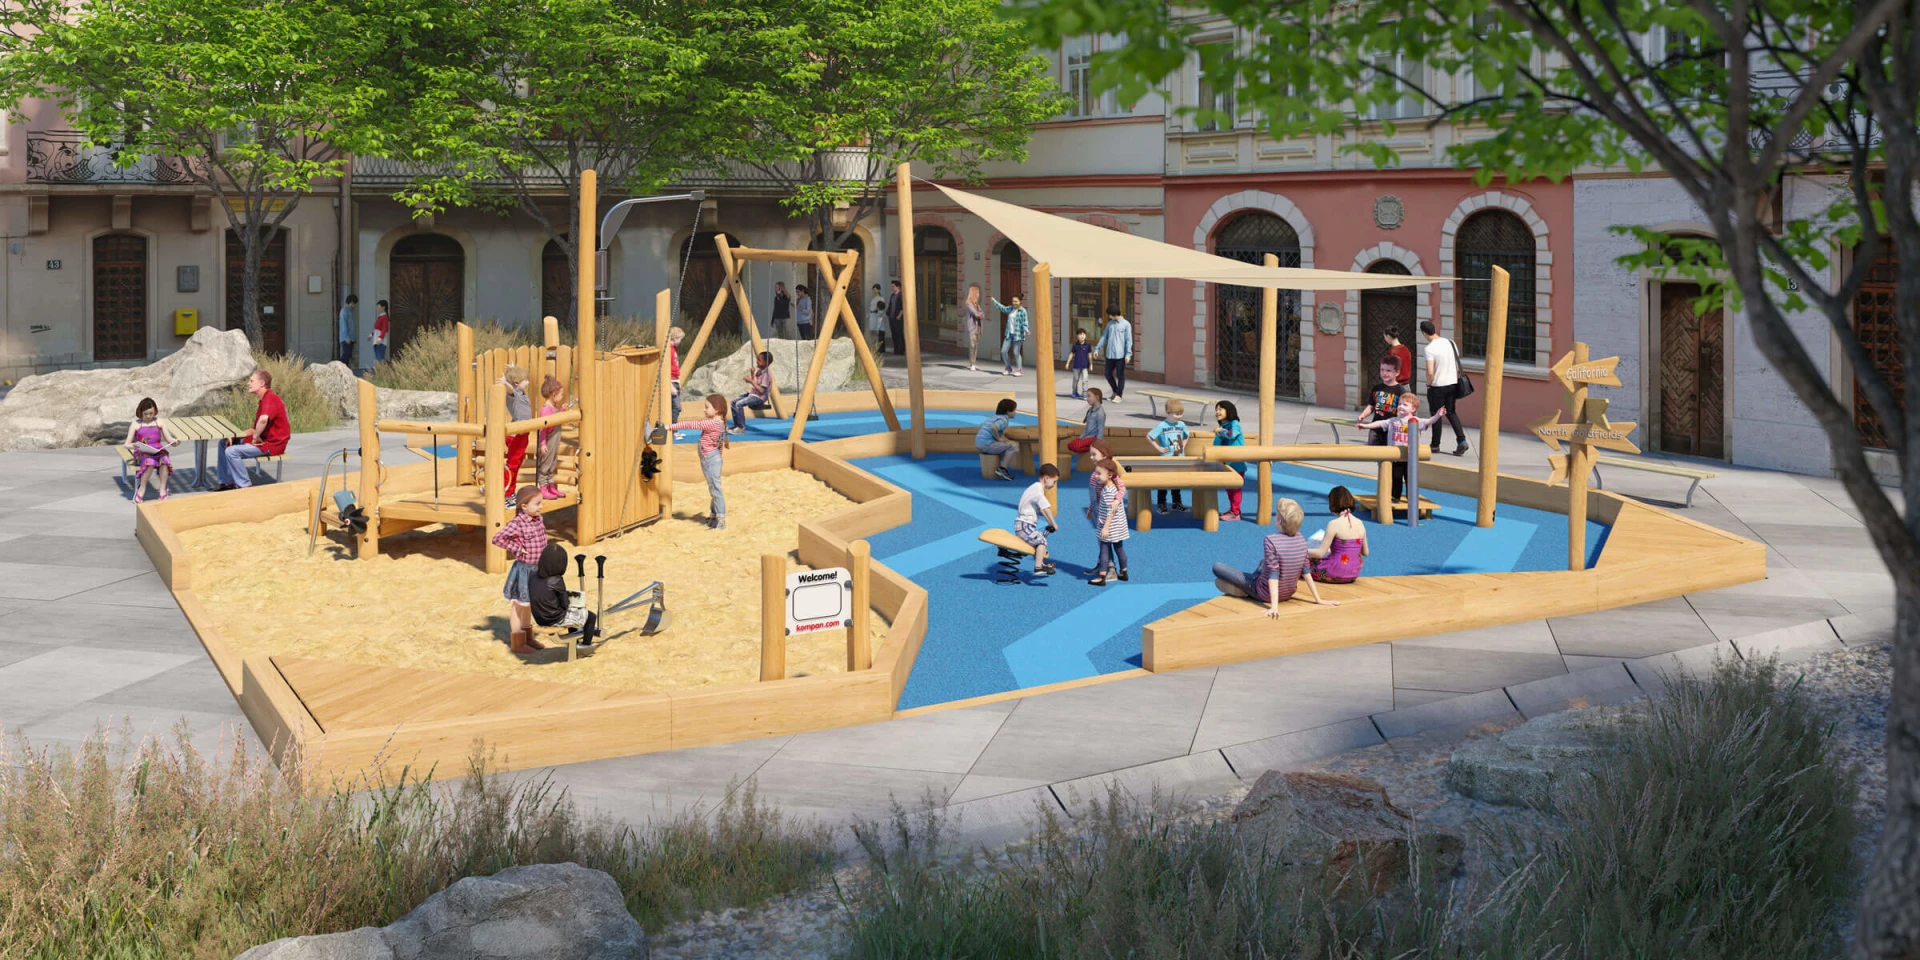 Idea de diseño de un parque infantil natural con el tema de la mina de oro